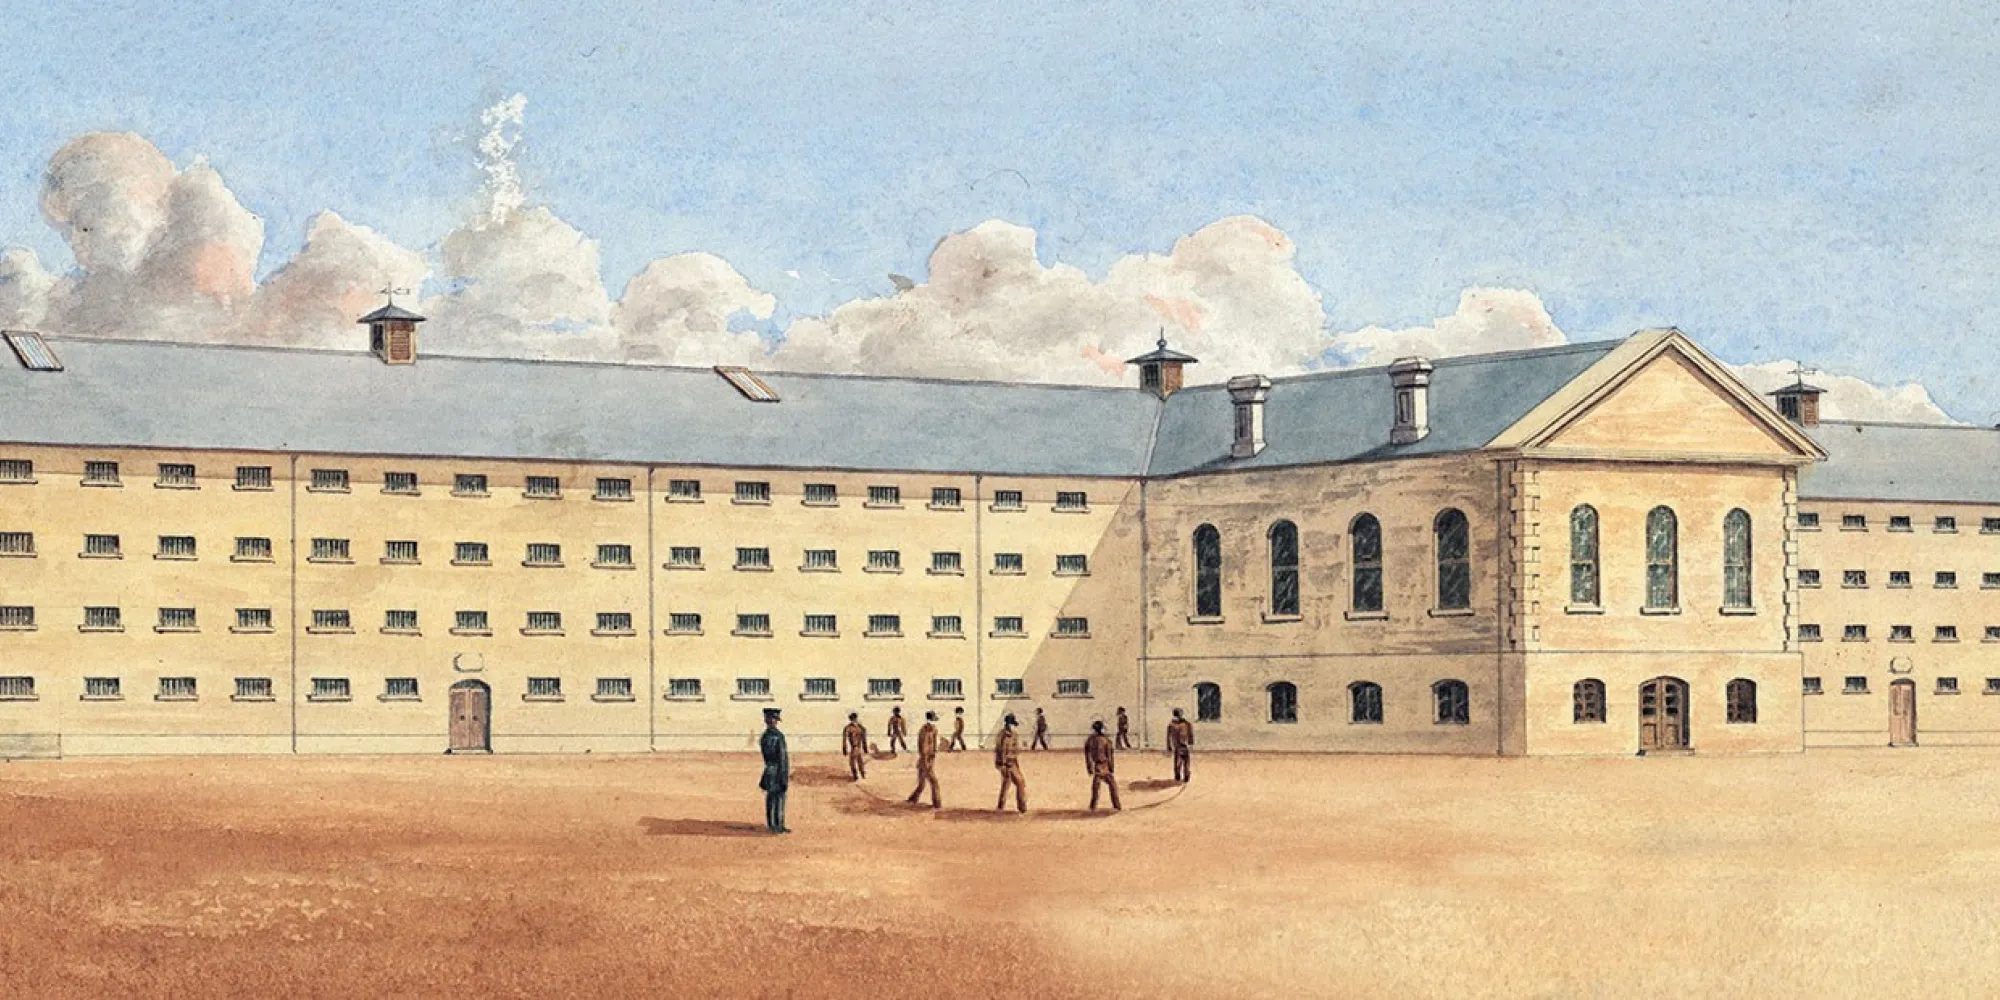 Freo Prison-Convict Depot